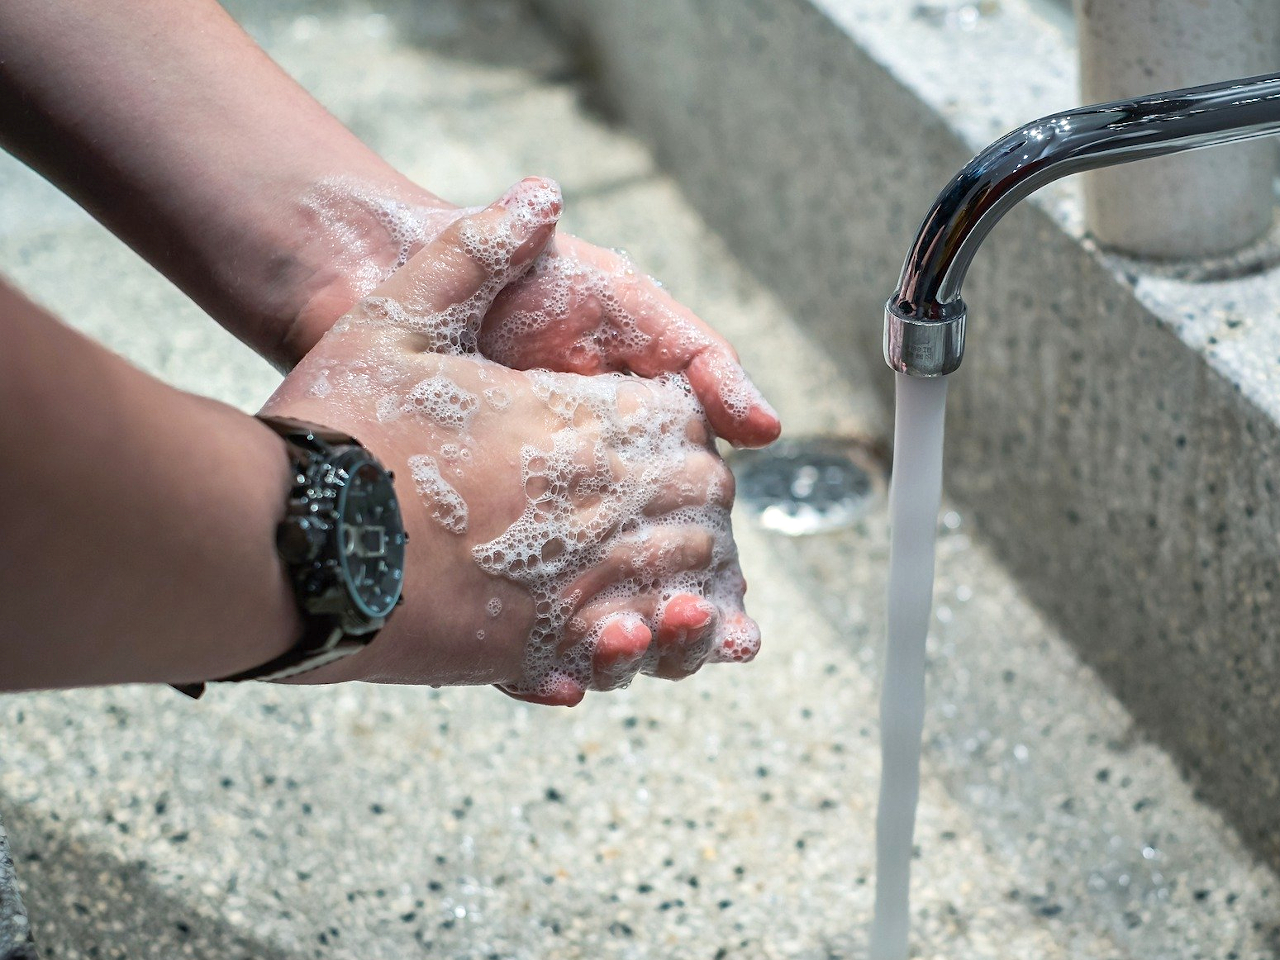 Mycie rąk jest jednym ze sposobów dbania o higienę